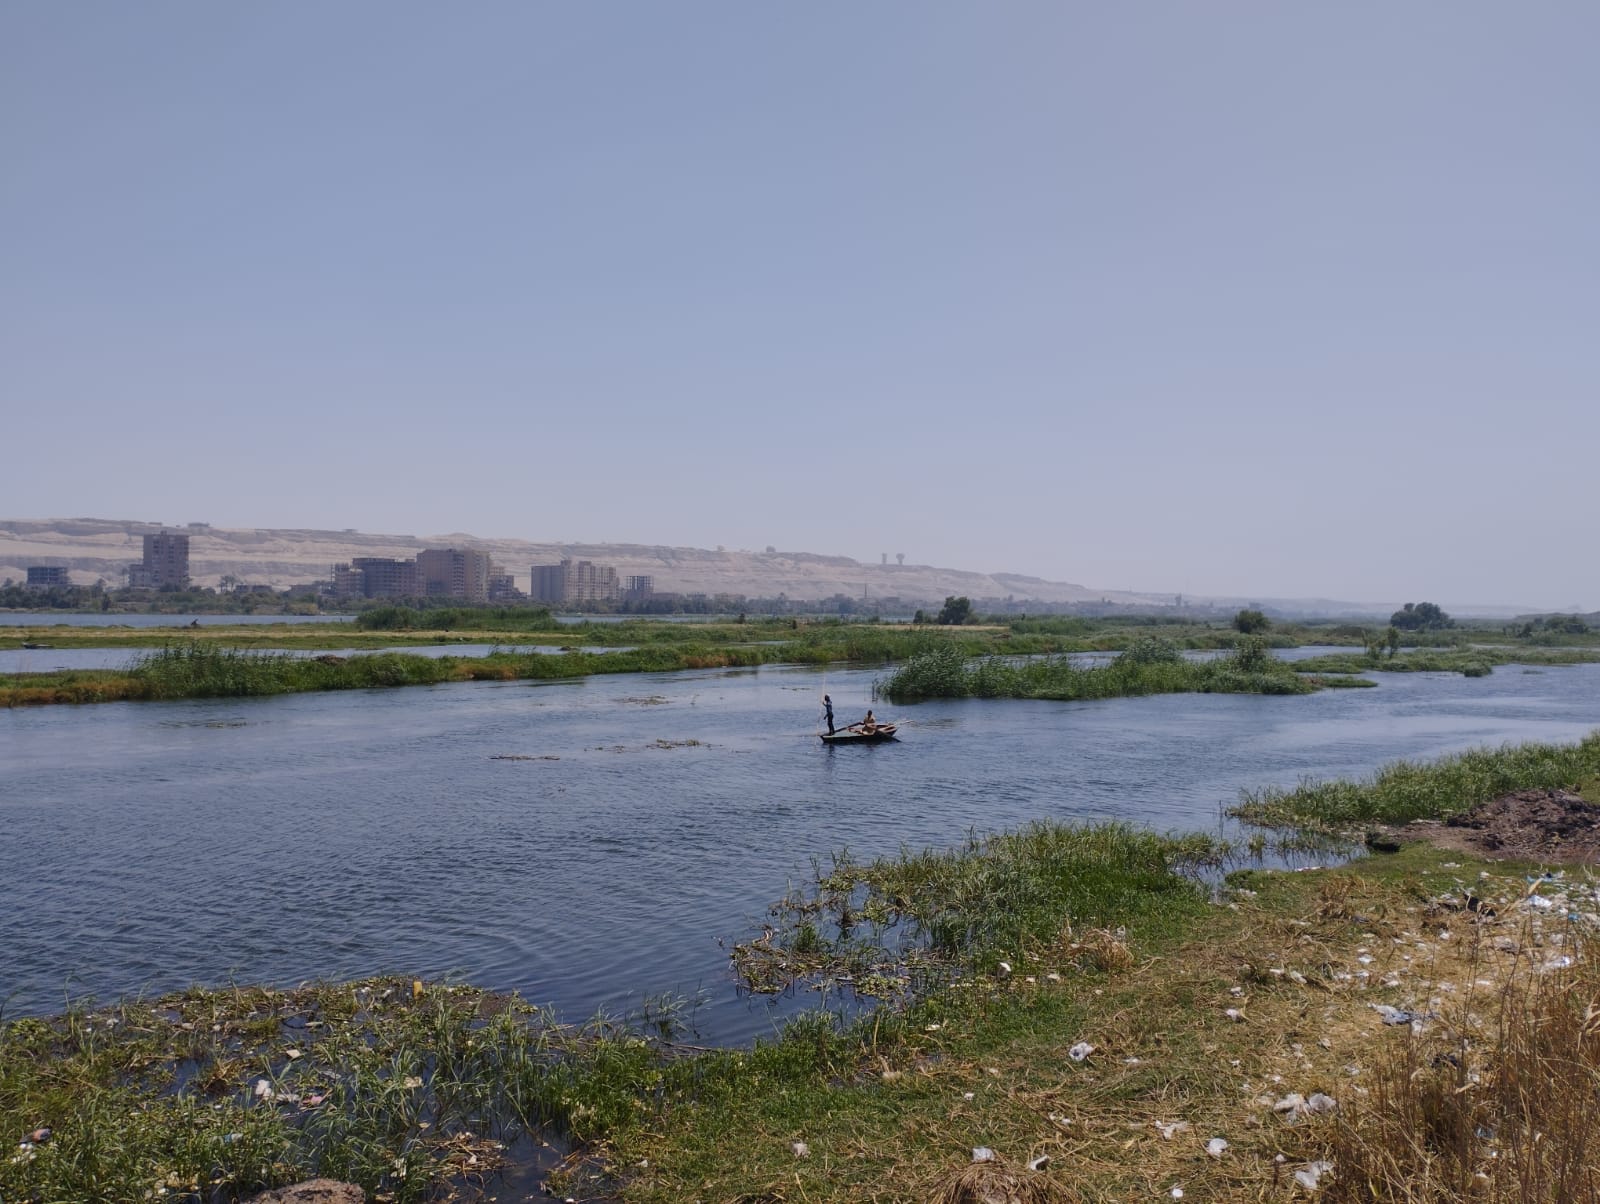  الصيادون ينطلقون بمراكب الصيد فى عرض النيل (1)